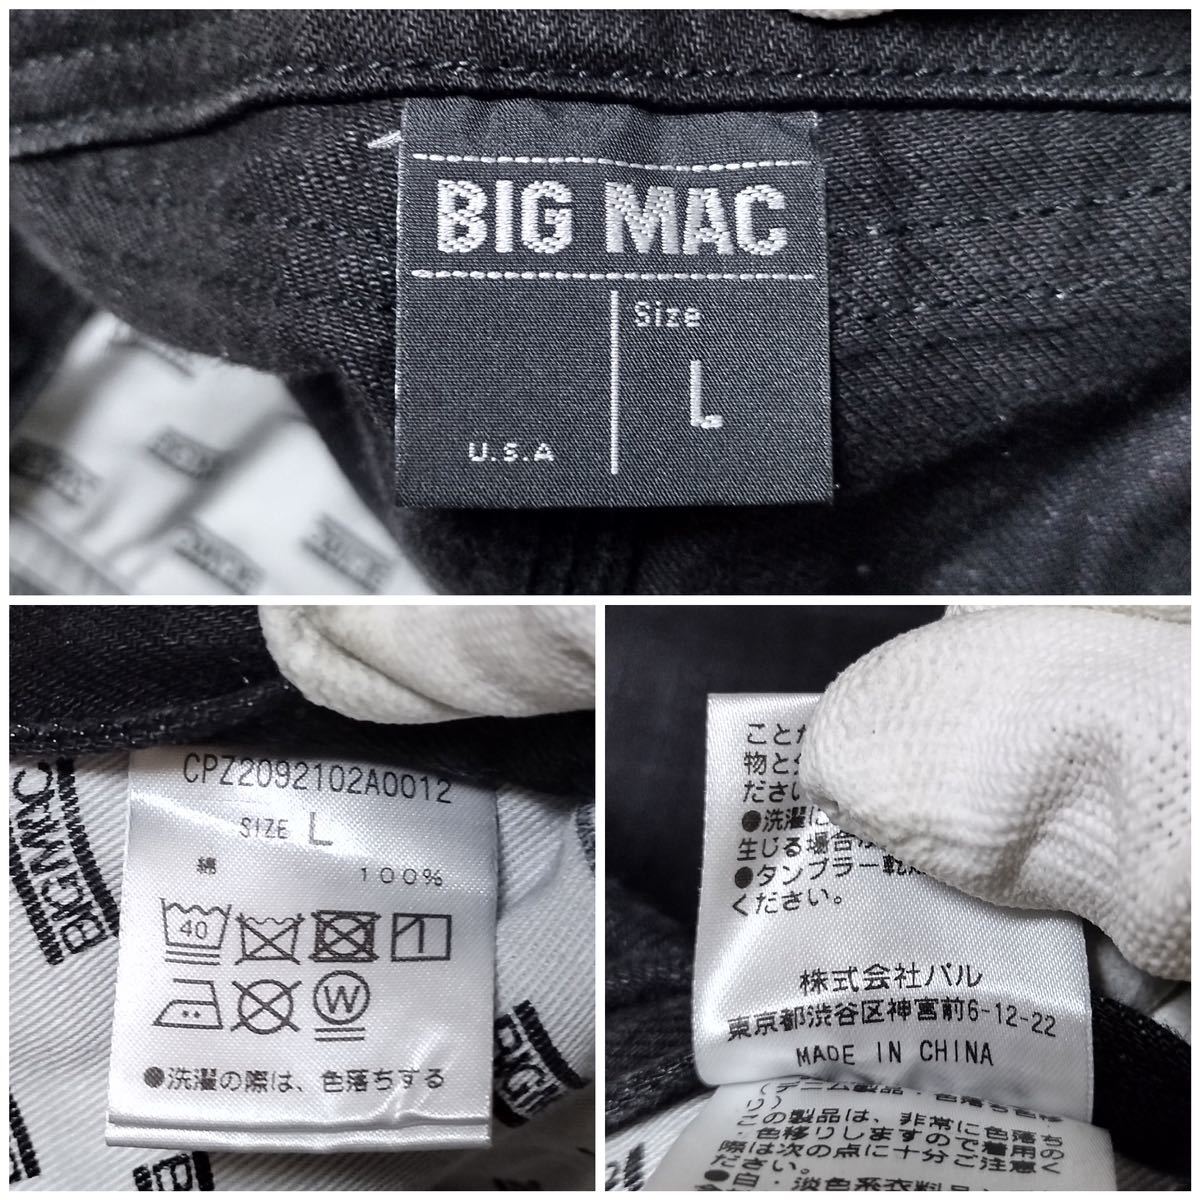 BIG MAC ビッグマック オーバーオール Lサイズ ウエスト96cm ペインター 黒 ワイド メンズ ジーンズ デニム M1891